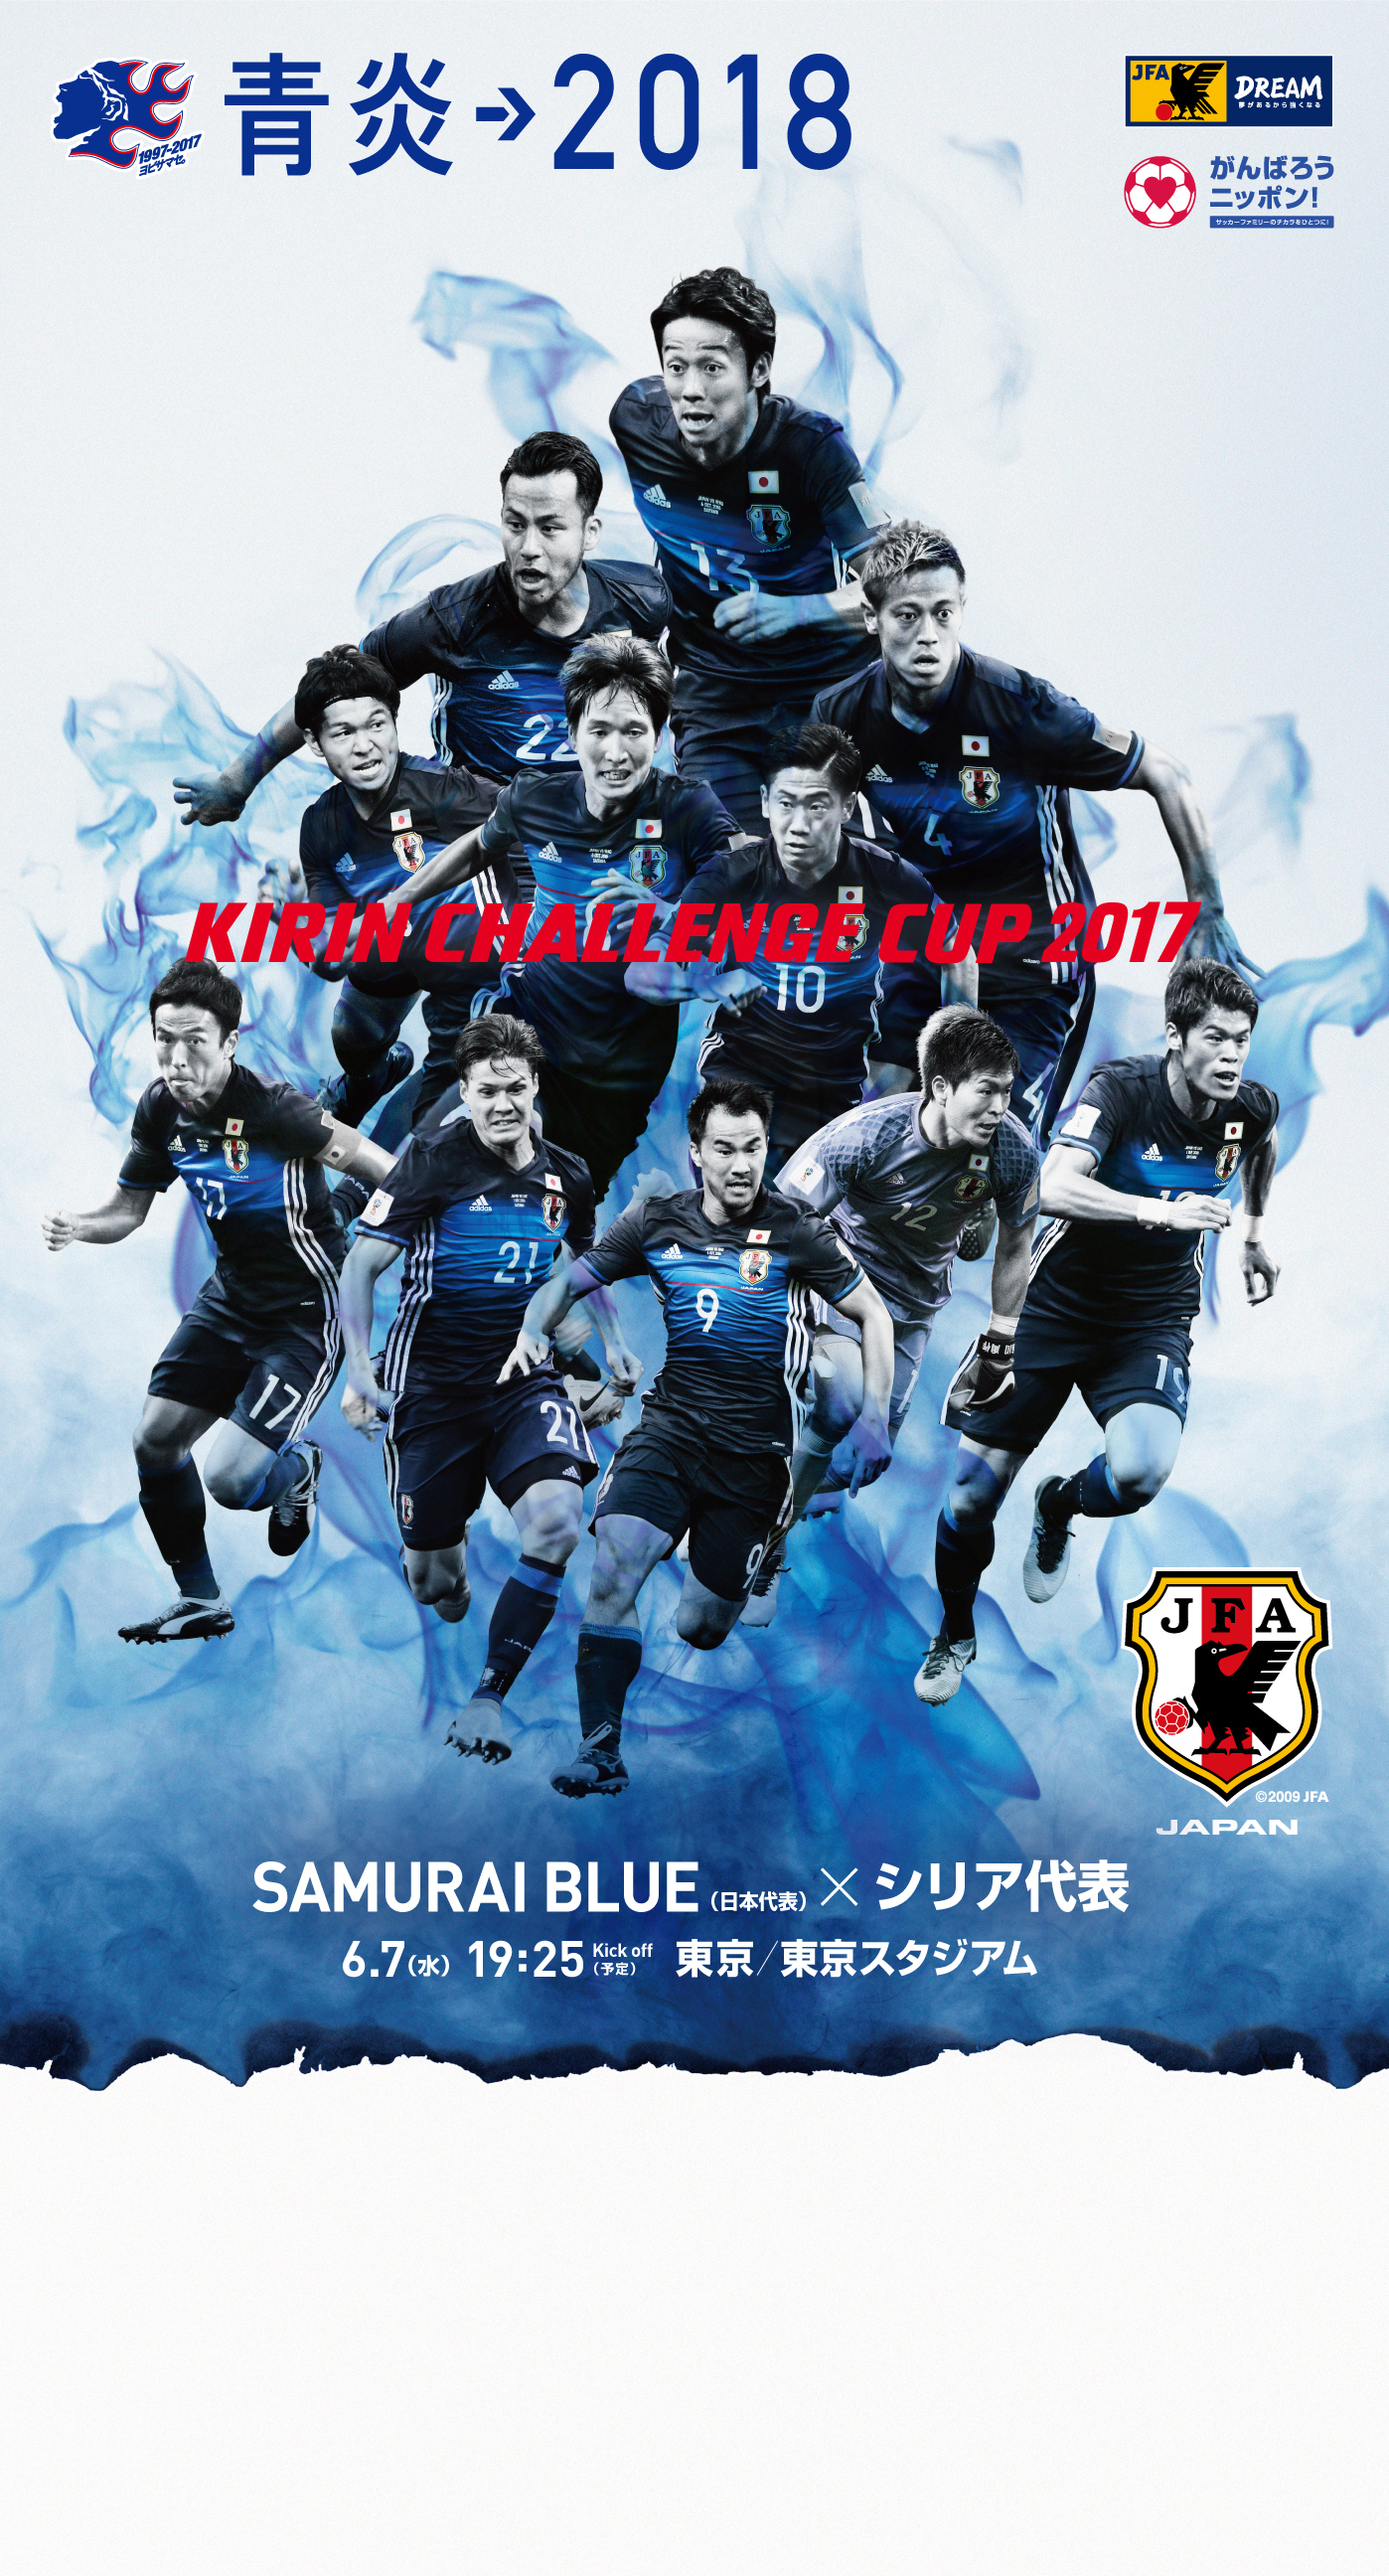 壁紙 ポスターダウンロード キリンチャレンジカップ2017 6 7 Samurai Blue 日本代表 Jfa 日本サッカー協会